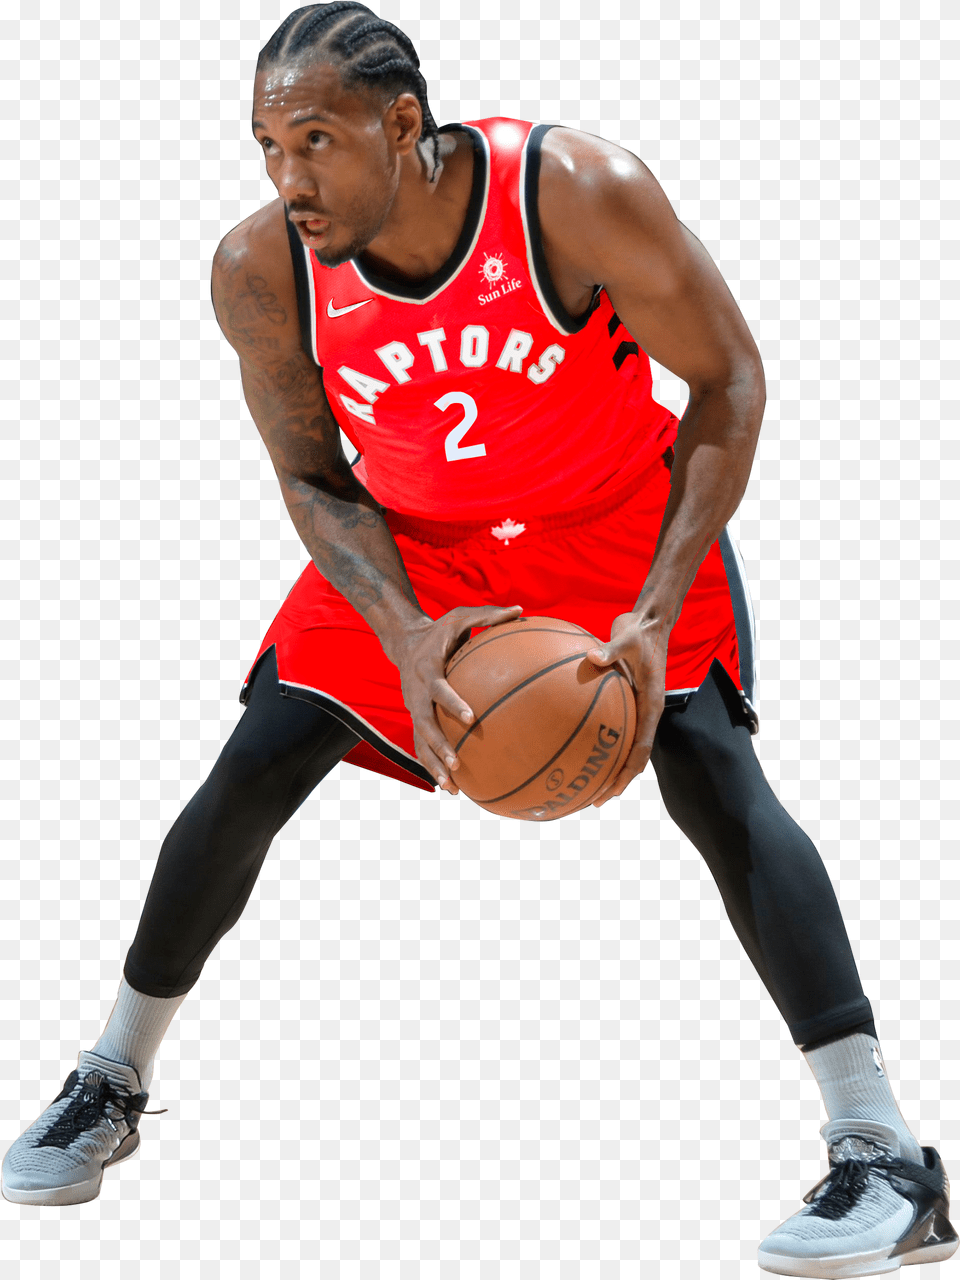 Toronto Basketball Player Nba Raptors Transparent Kawhi Leonard, Sport, Ball, Basketball (ball), Playing Basketball Png Image